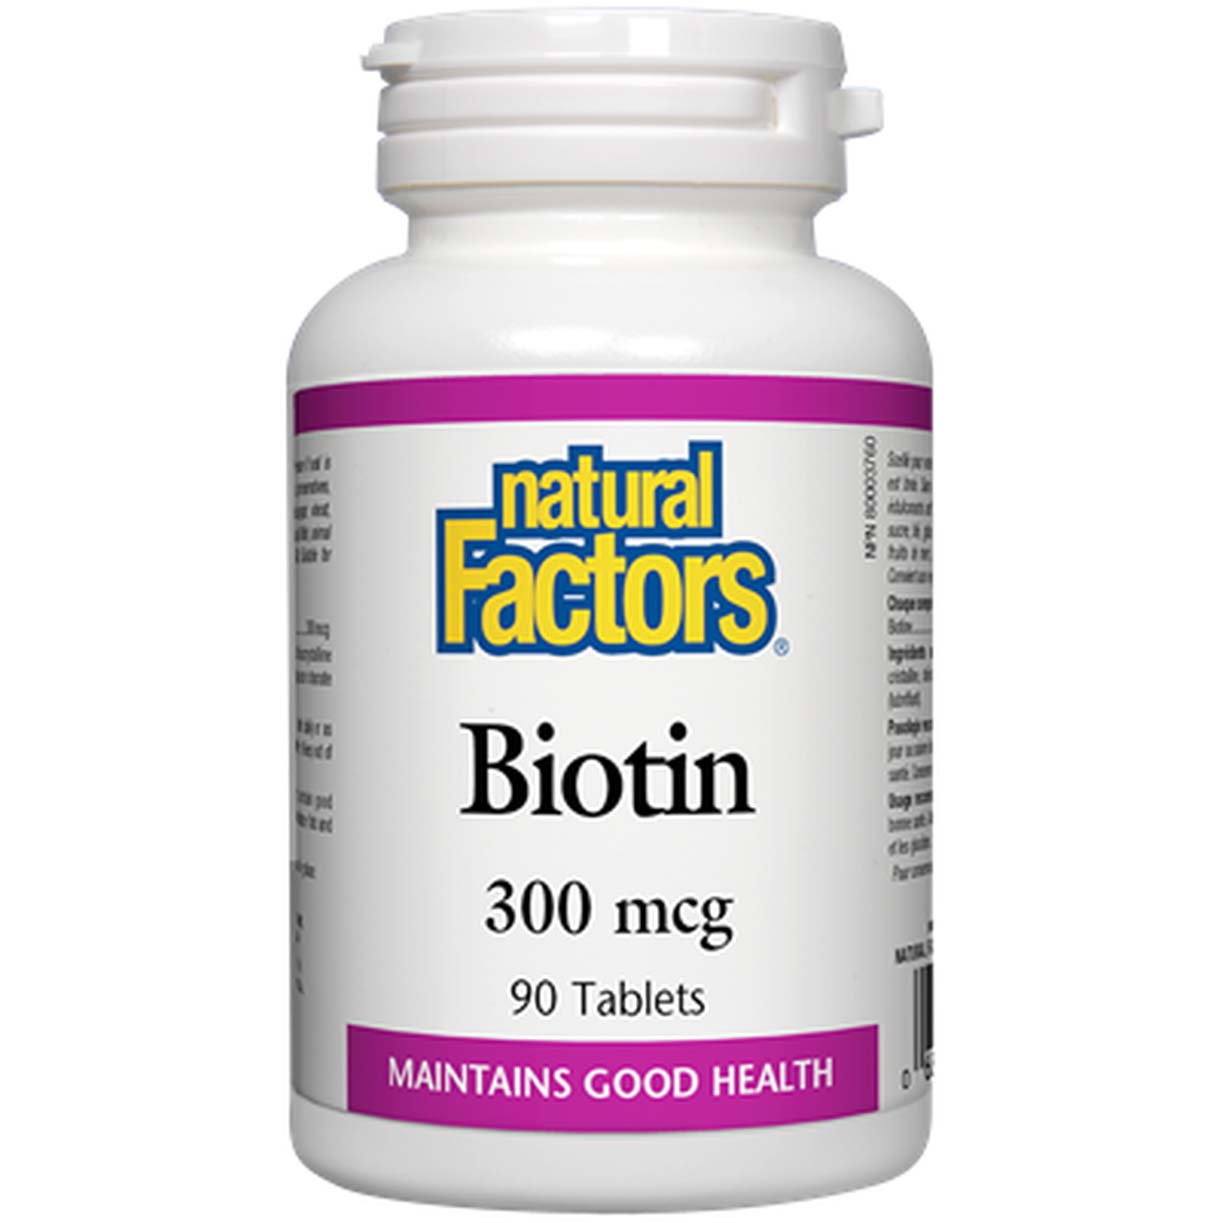 Natural Factors Biotin, 300 mcg, 90 Tablets